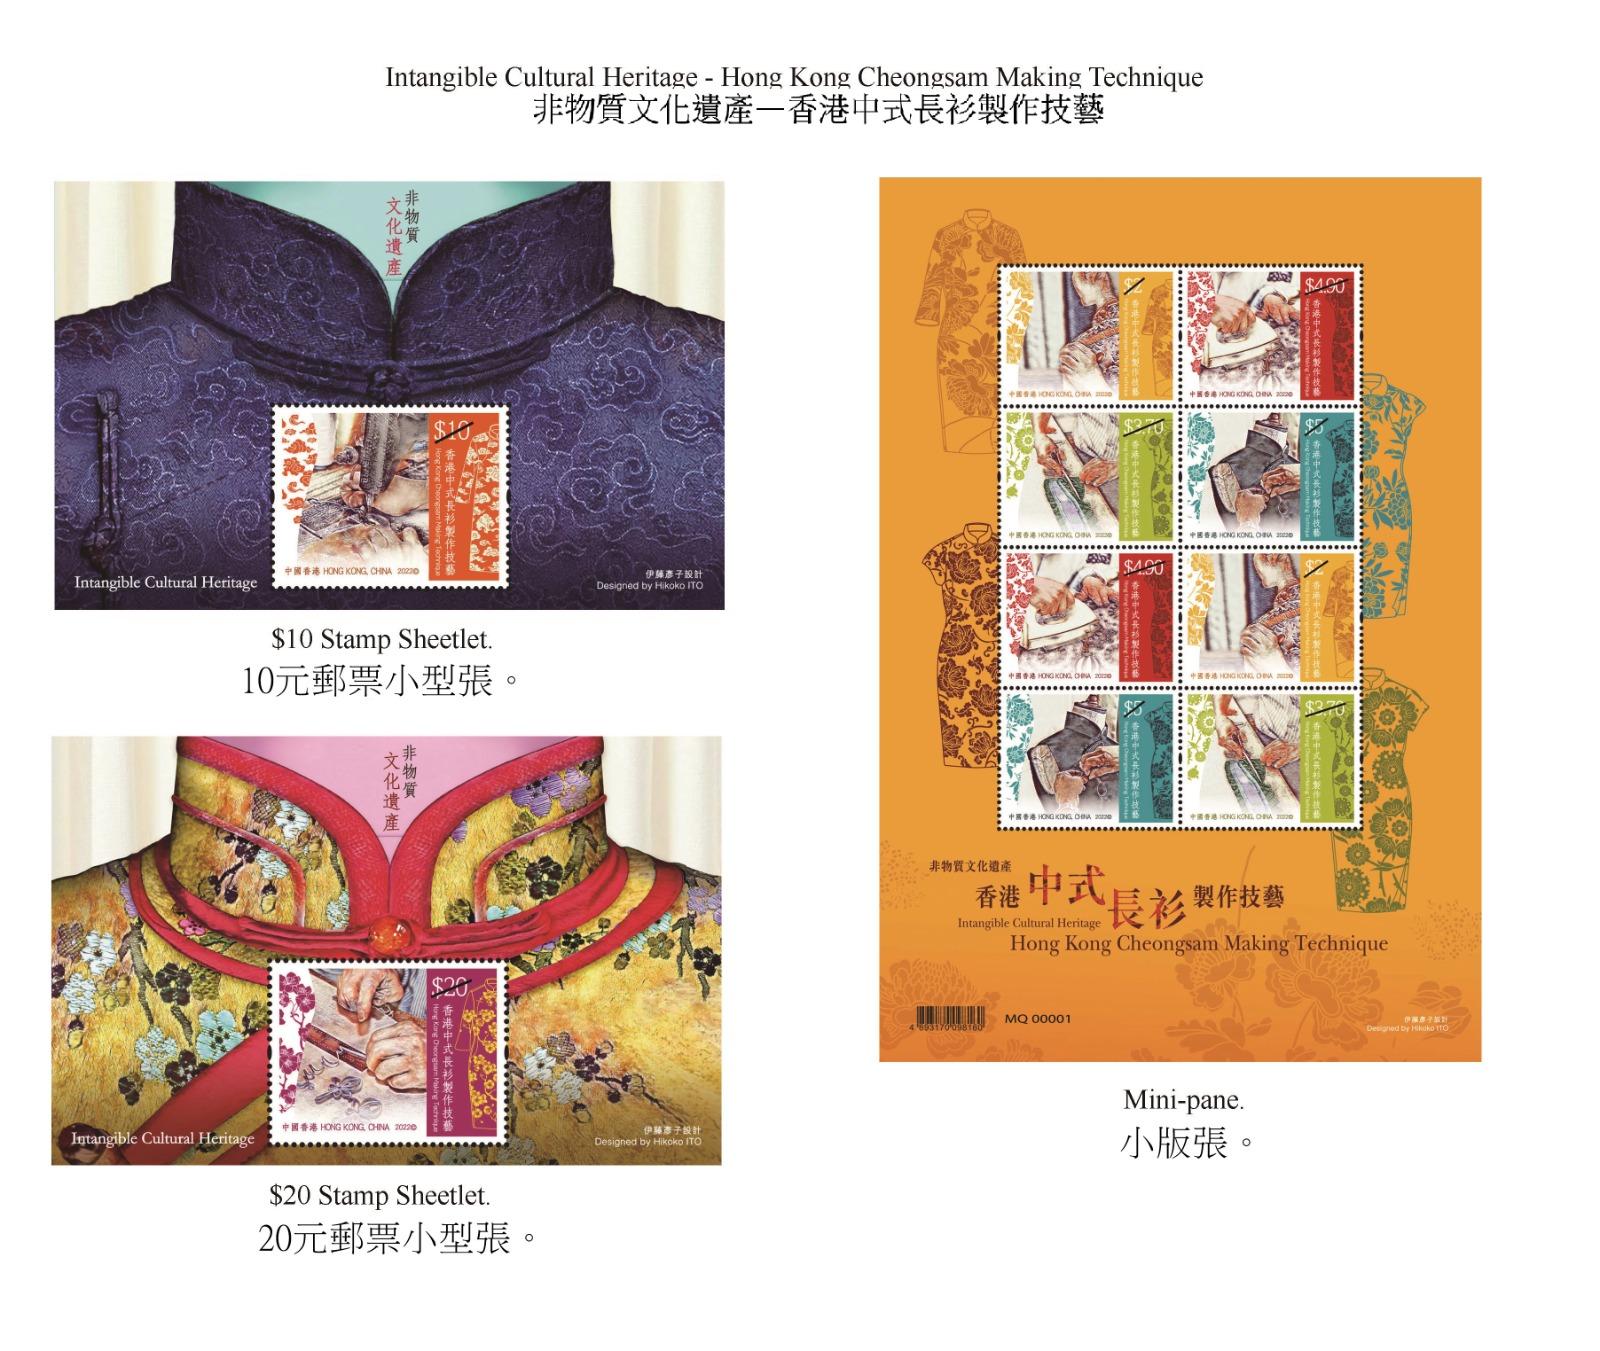 香港郵政九月二十二日（星期四）發行以「非物質文化遺產──香港中式長衫製作技藝」為題的特別郵票及相關集郵品。圖示郵票小型張和小版張。